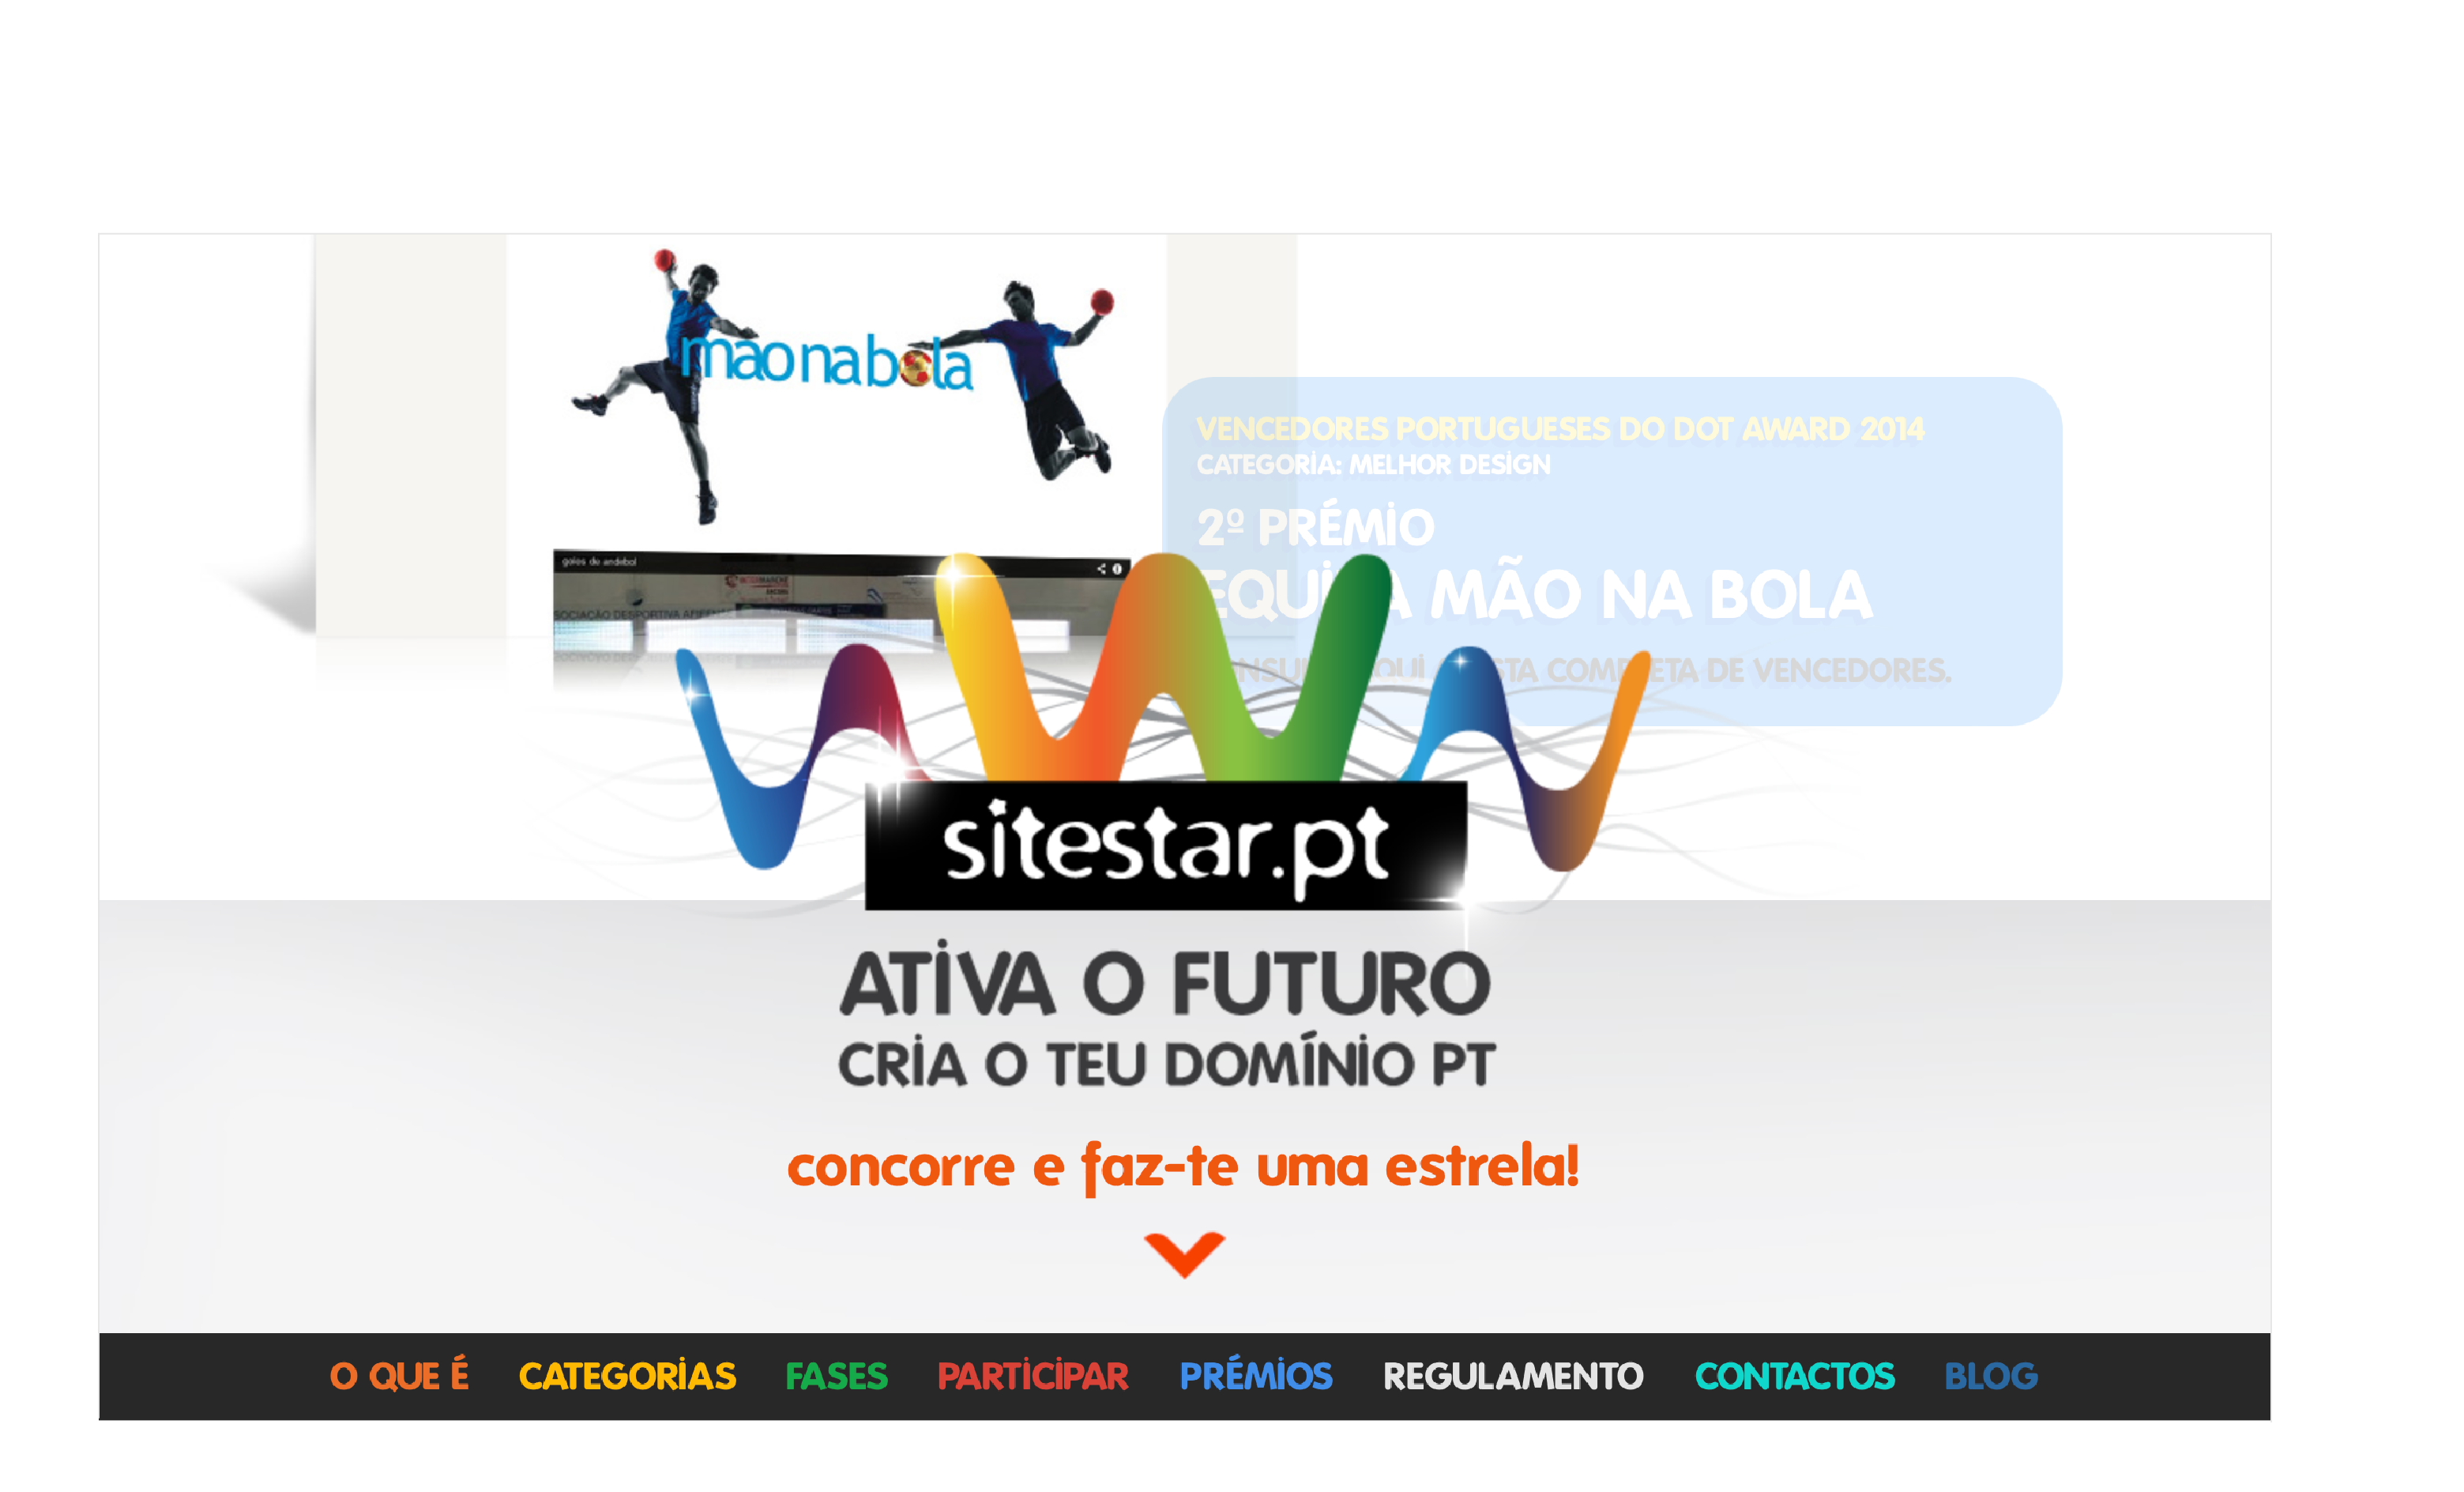 1ª edição do concurso Sitestar.pt